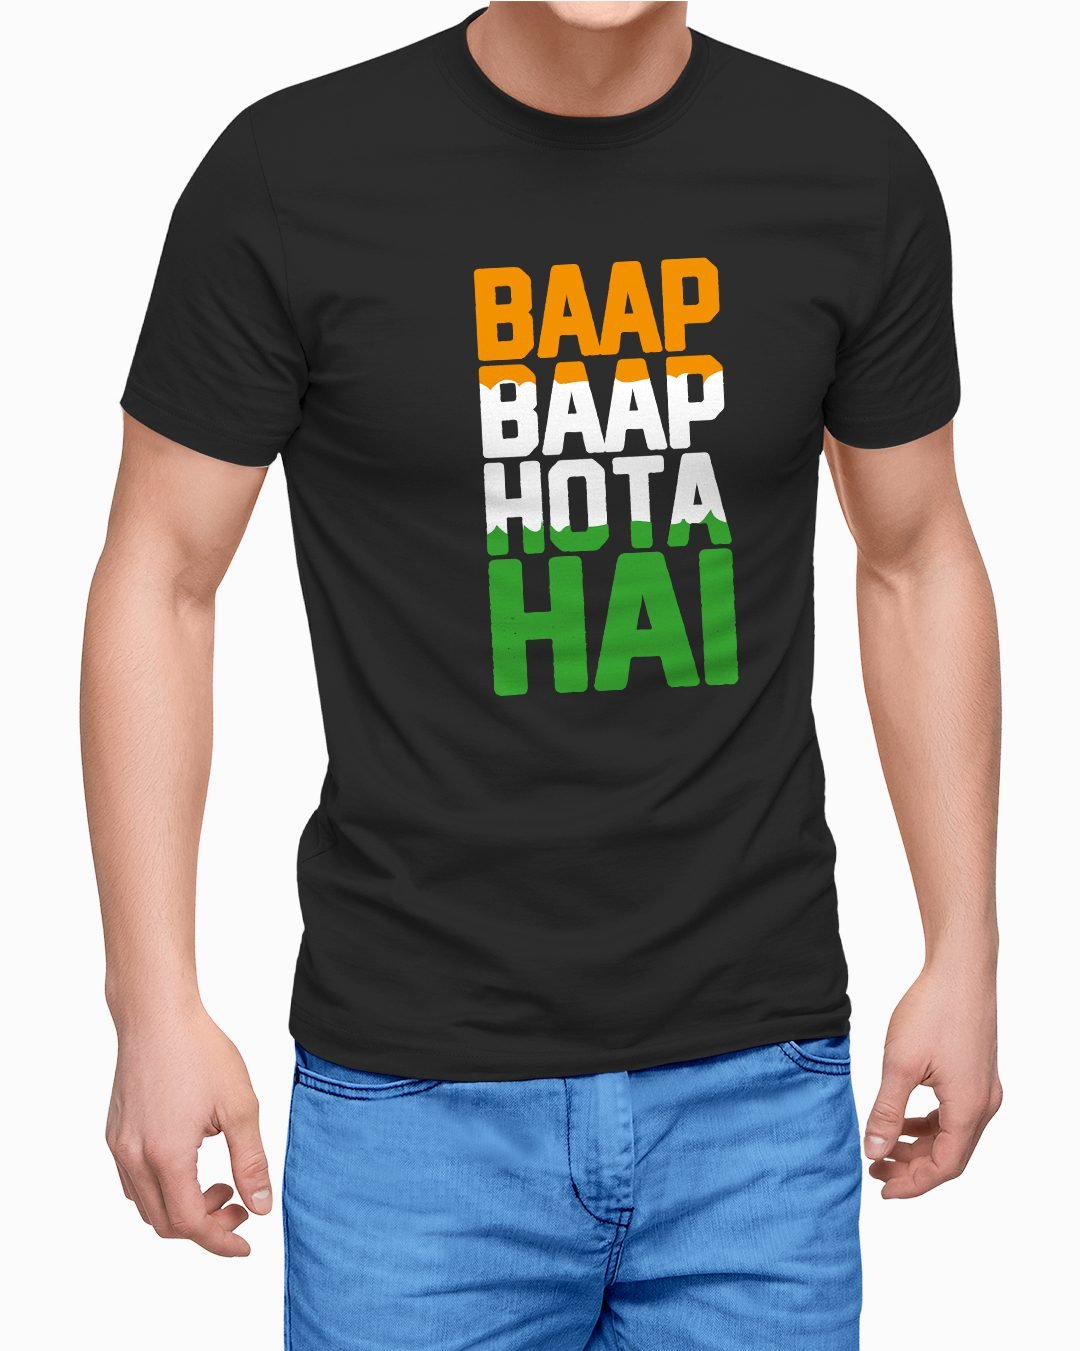 Baap Baap Hota Hai Graphic Printed T-Shirt